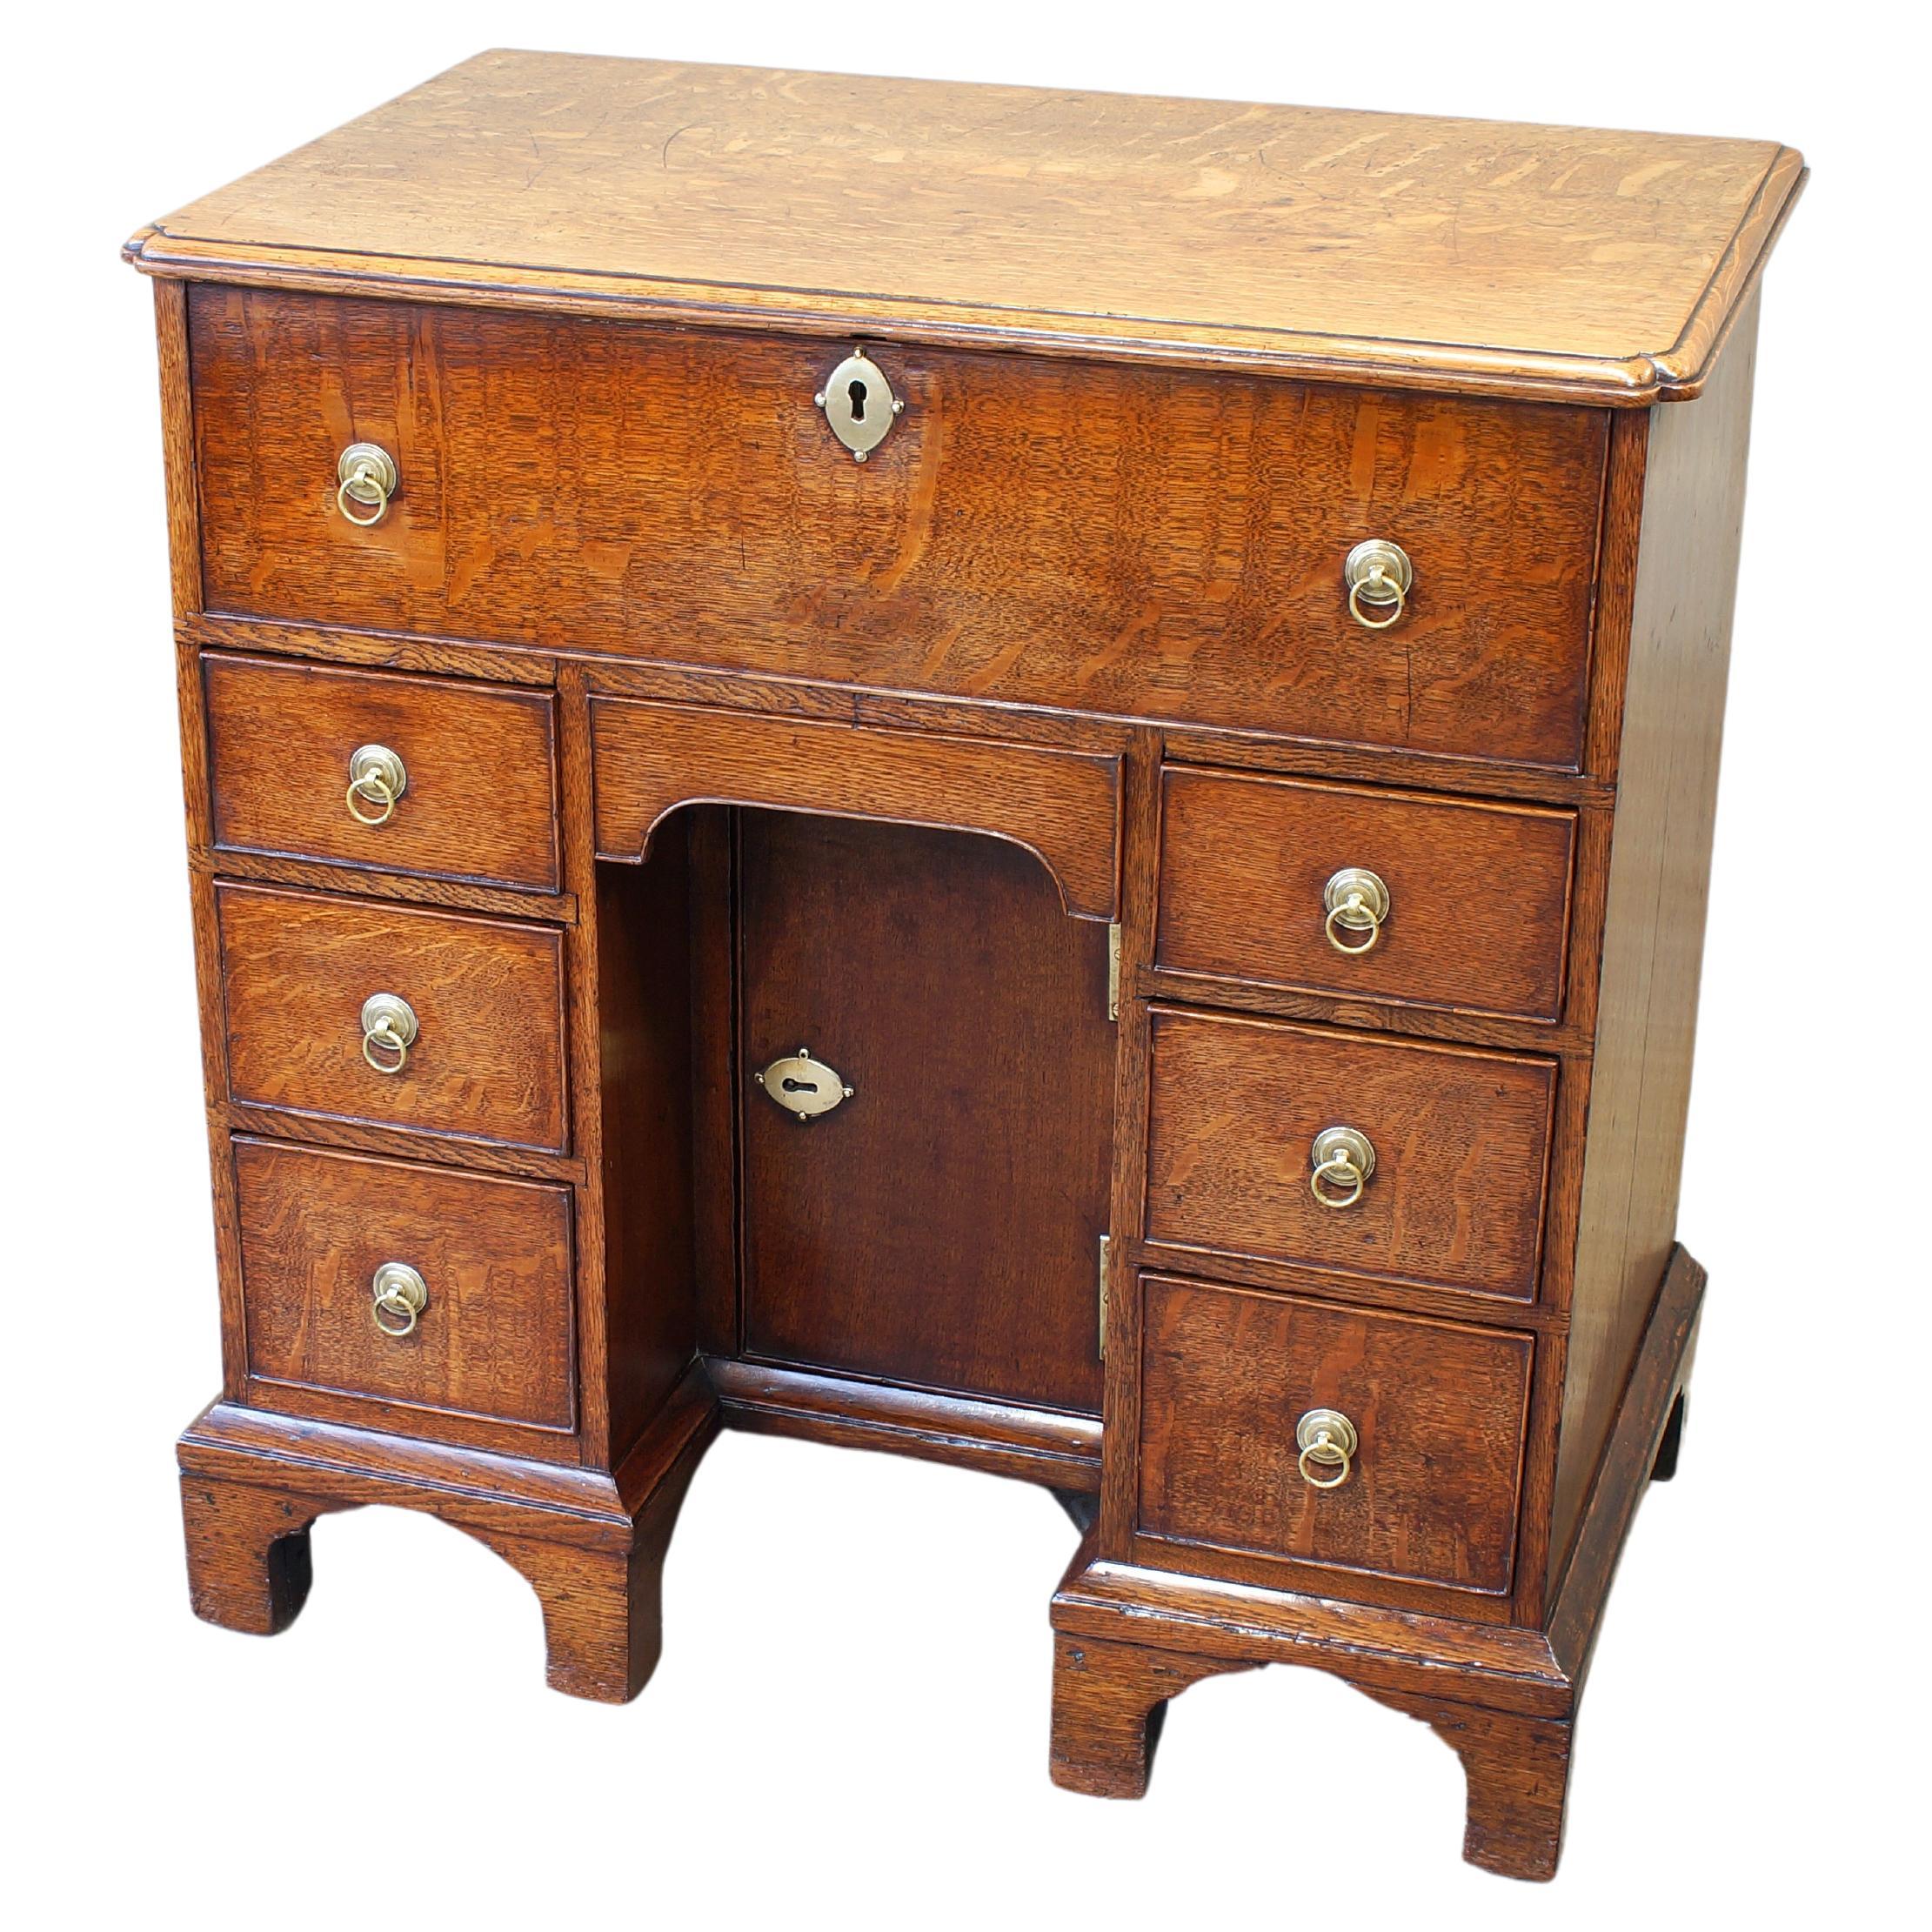  Kleiner englischer Sekretär-Knieloch-Schreibtisch aus Eiche aus dem 18. Jahrhundert